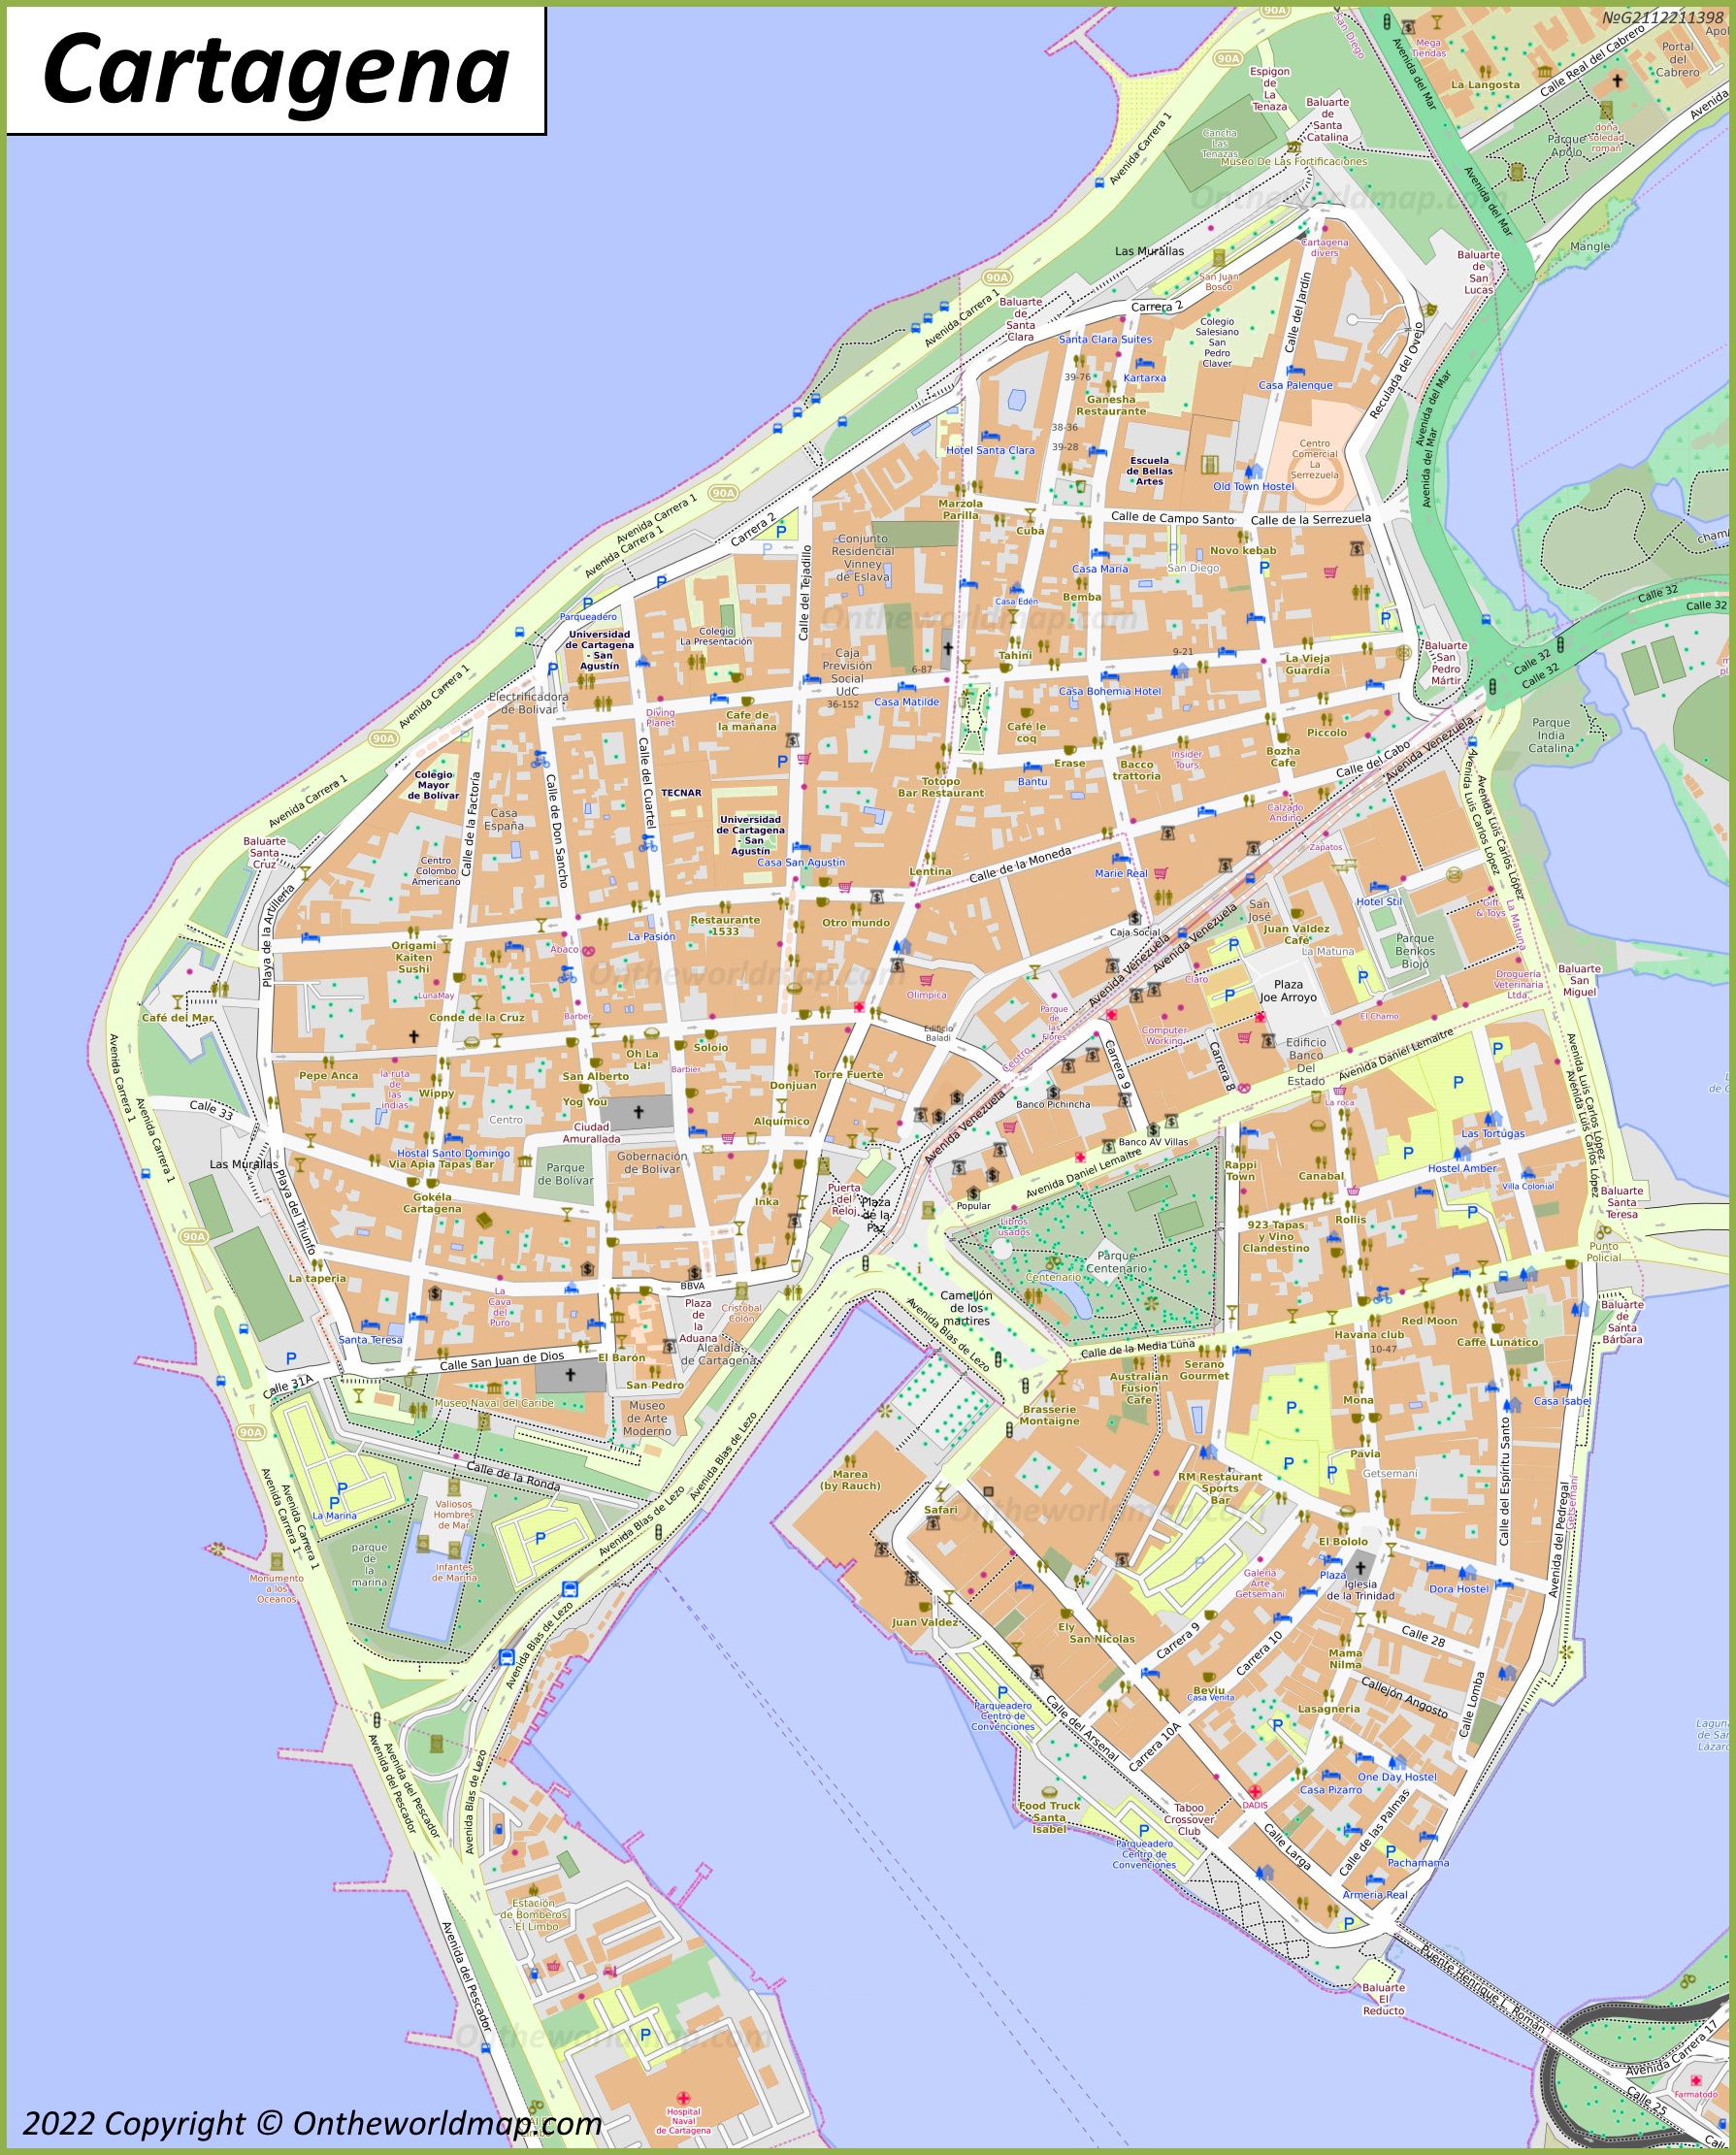 Cartagena City Centre Map